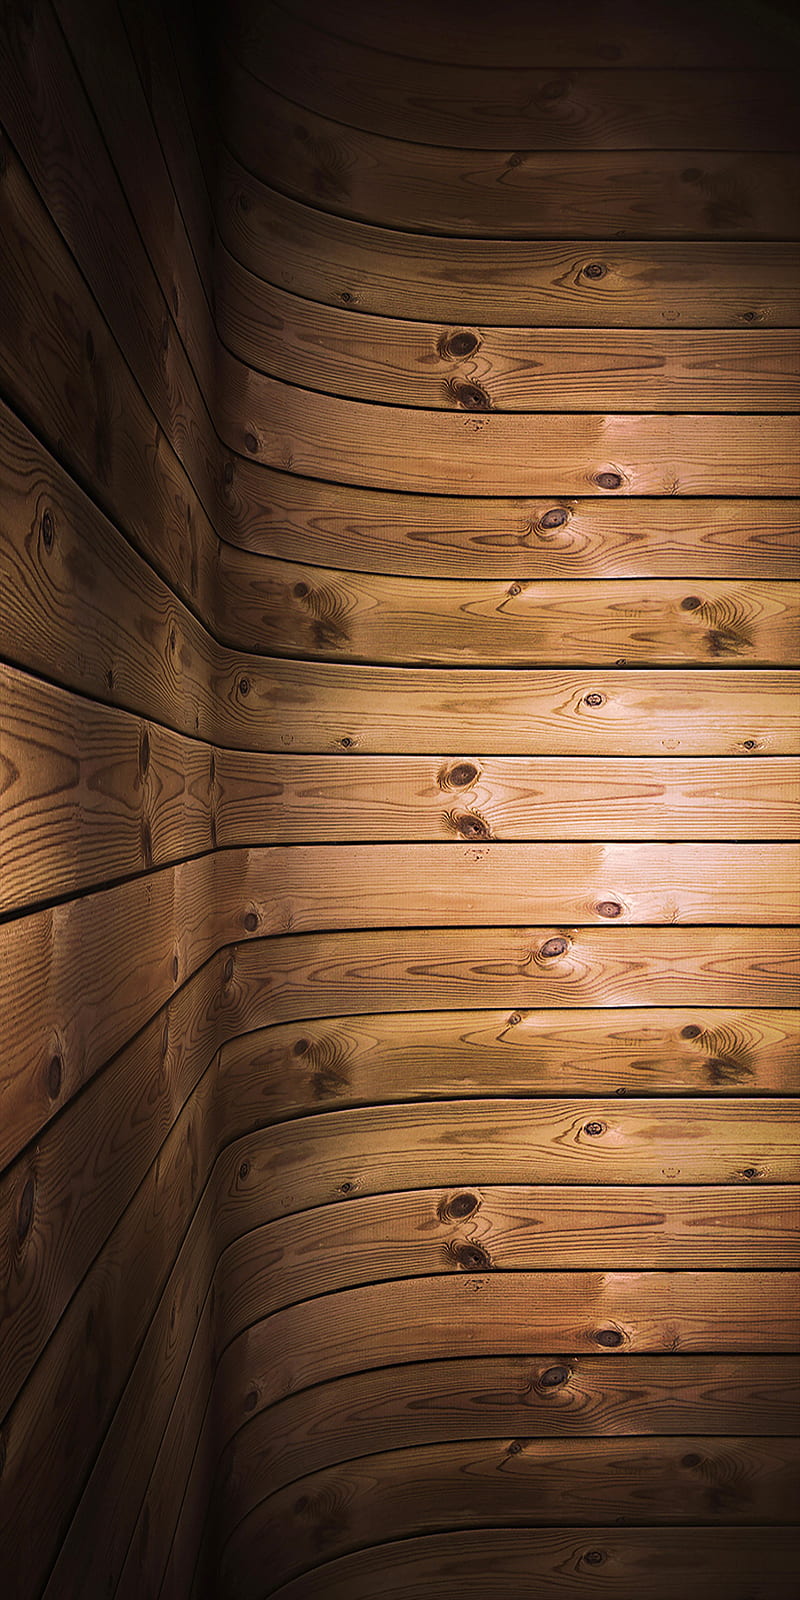 XEM MẪU SÀN GỖ - Tận hưởng sự ấm áp của gỗ trong mỗi bước chân của bạn. Hãy xem mẫu sàn gỗ để tìm kiếm những ý tưởng trang trí độc đáo và tinh tế cho ngôi nhà của bạn. Từ các mẫu đơn giản đến những bản vẽ phức tạp, chúng sẽ mang lại cho bạn sự lựa chọn đa dạng và phù hợp với mọi phong cách.